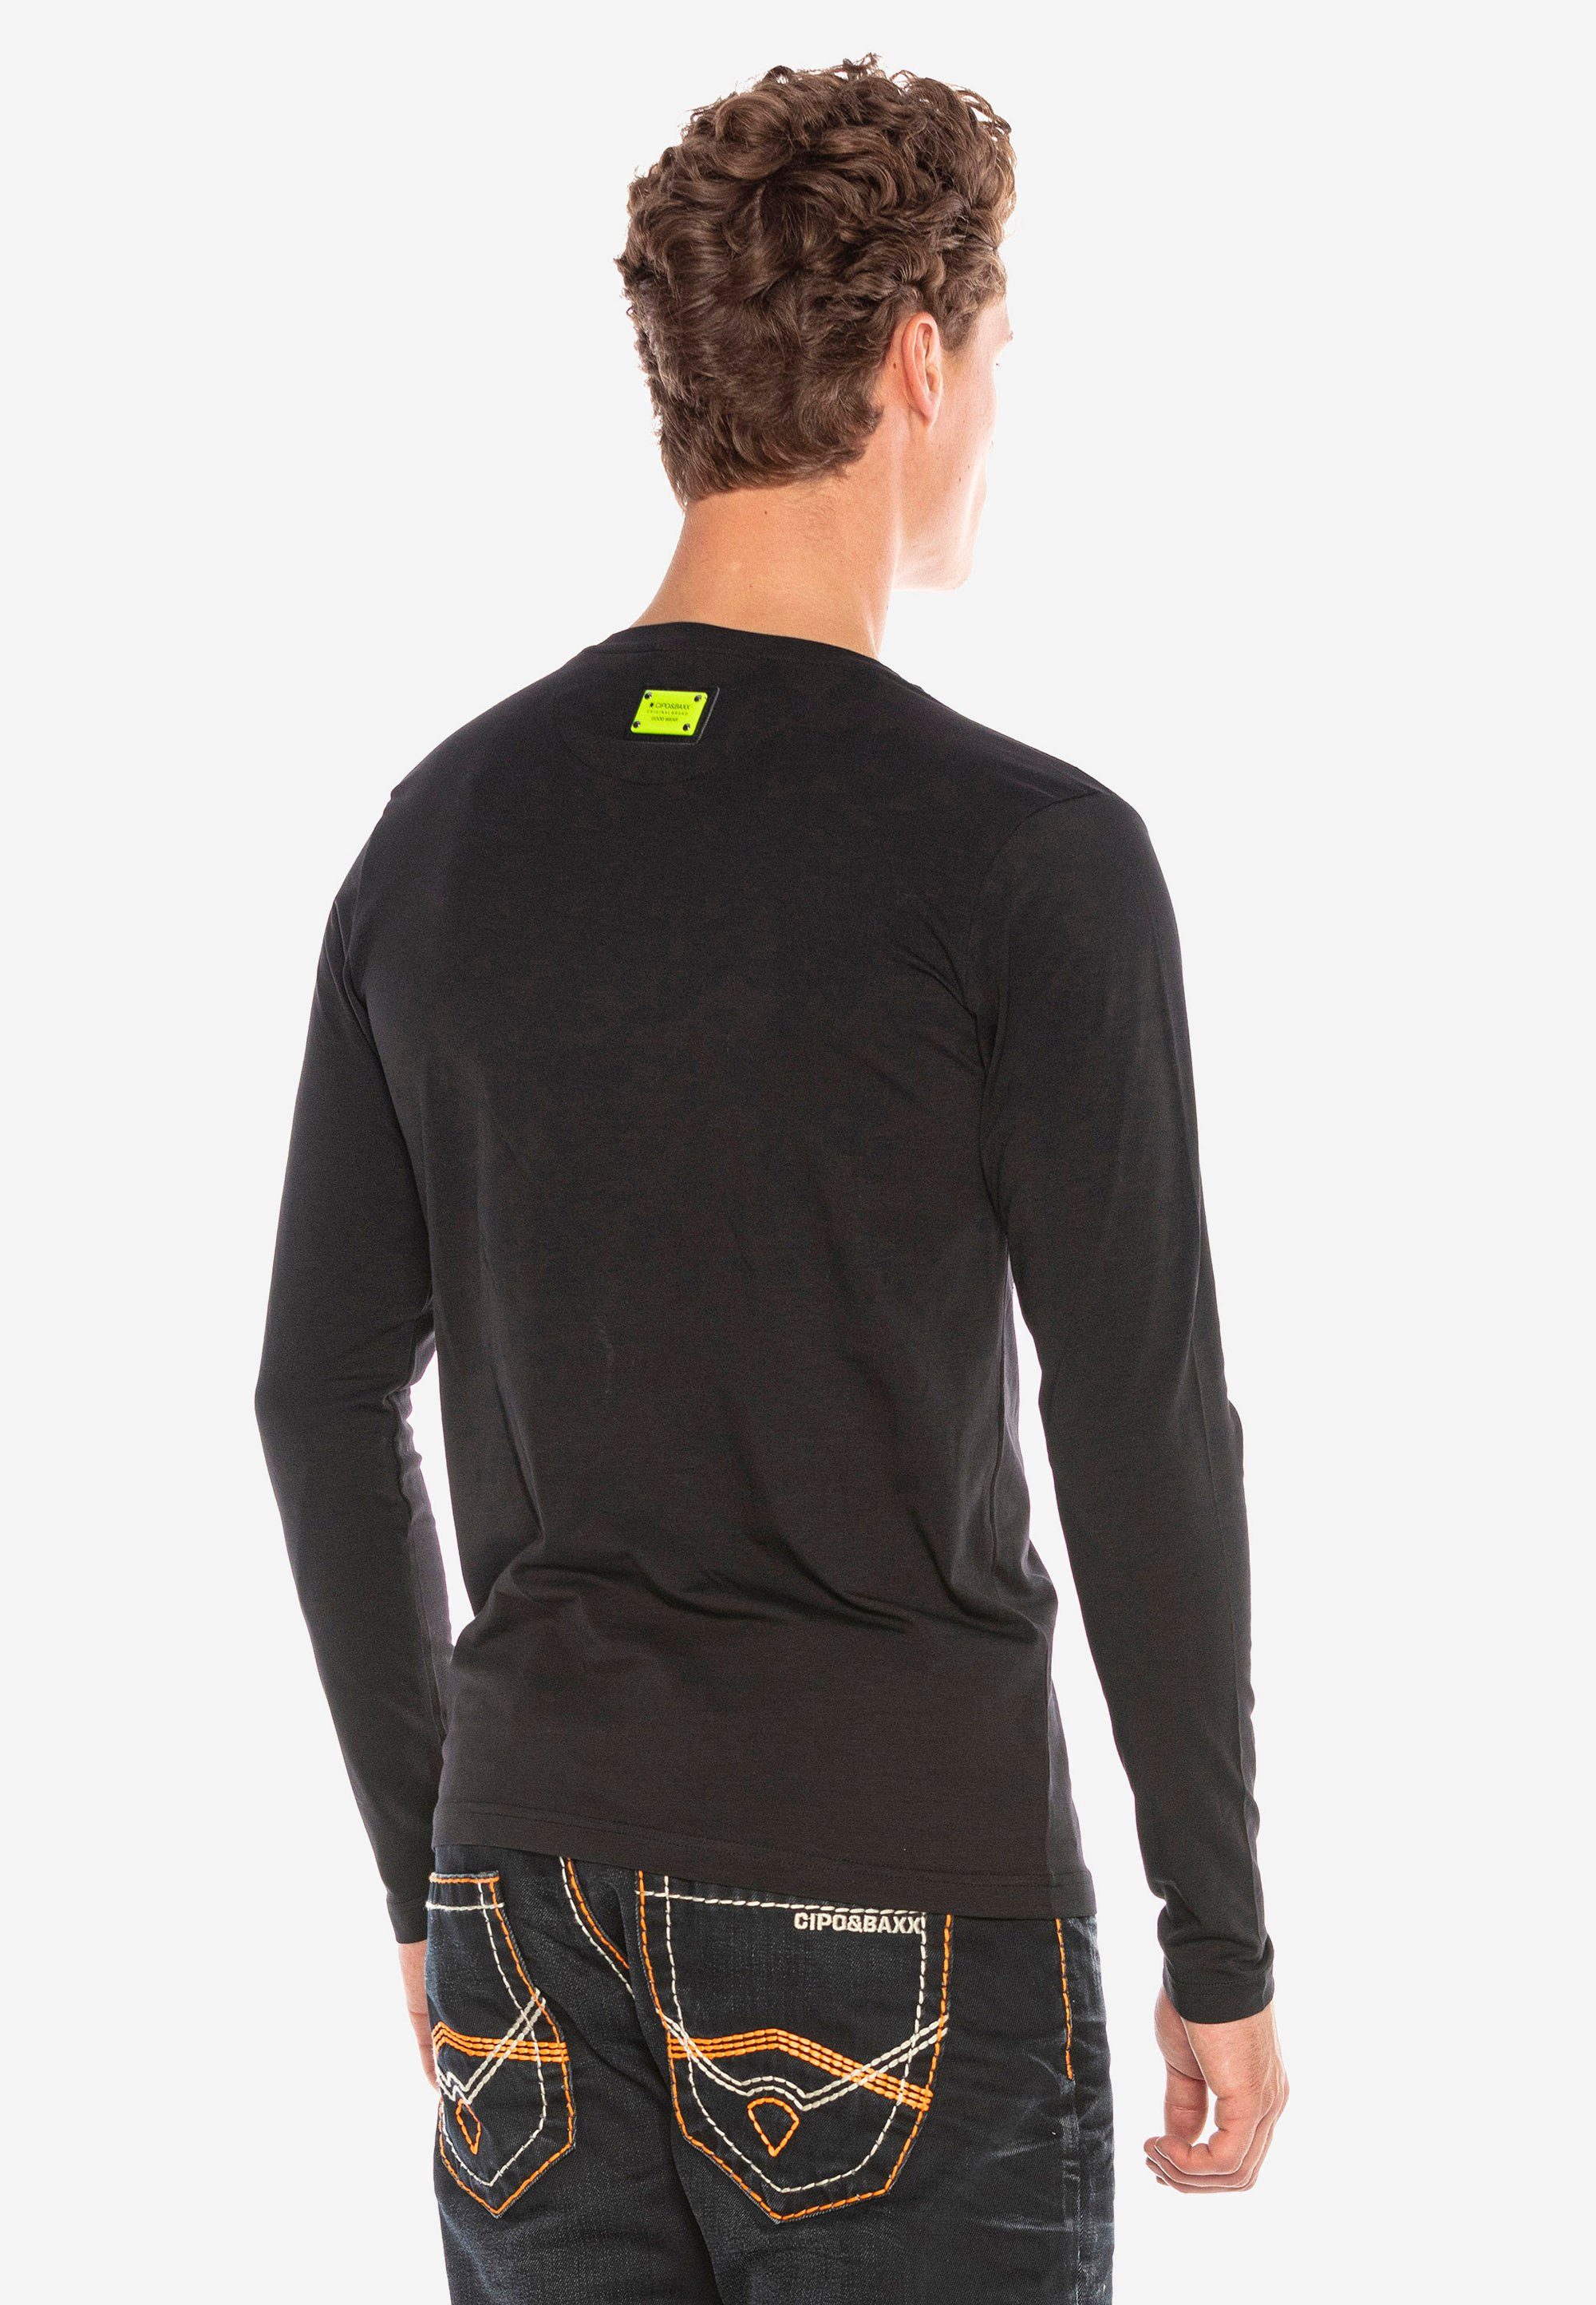 Cipo & mit schwarz Strass-Applikationen stylischen Langarmshirt Baxx